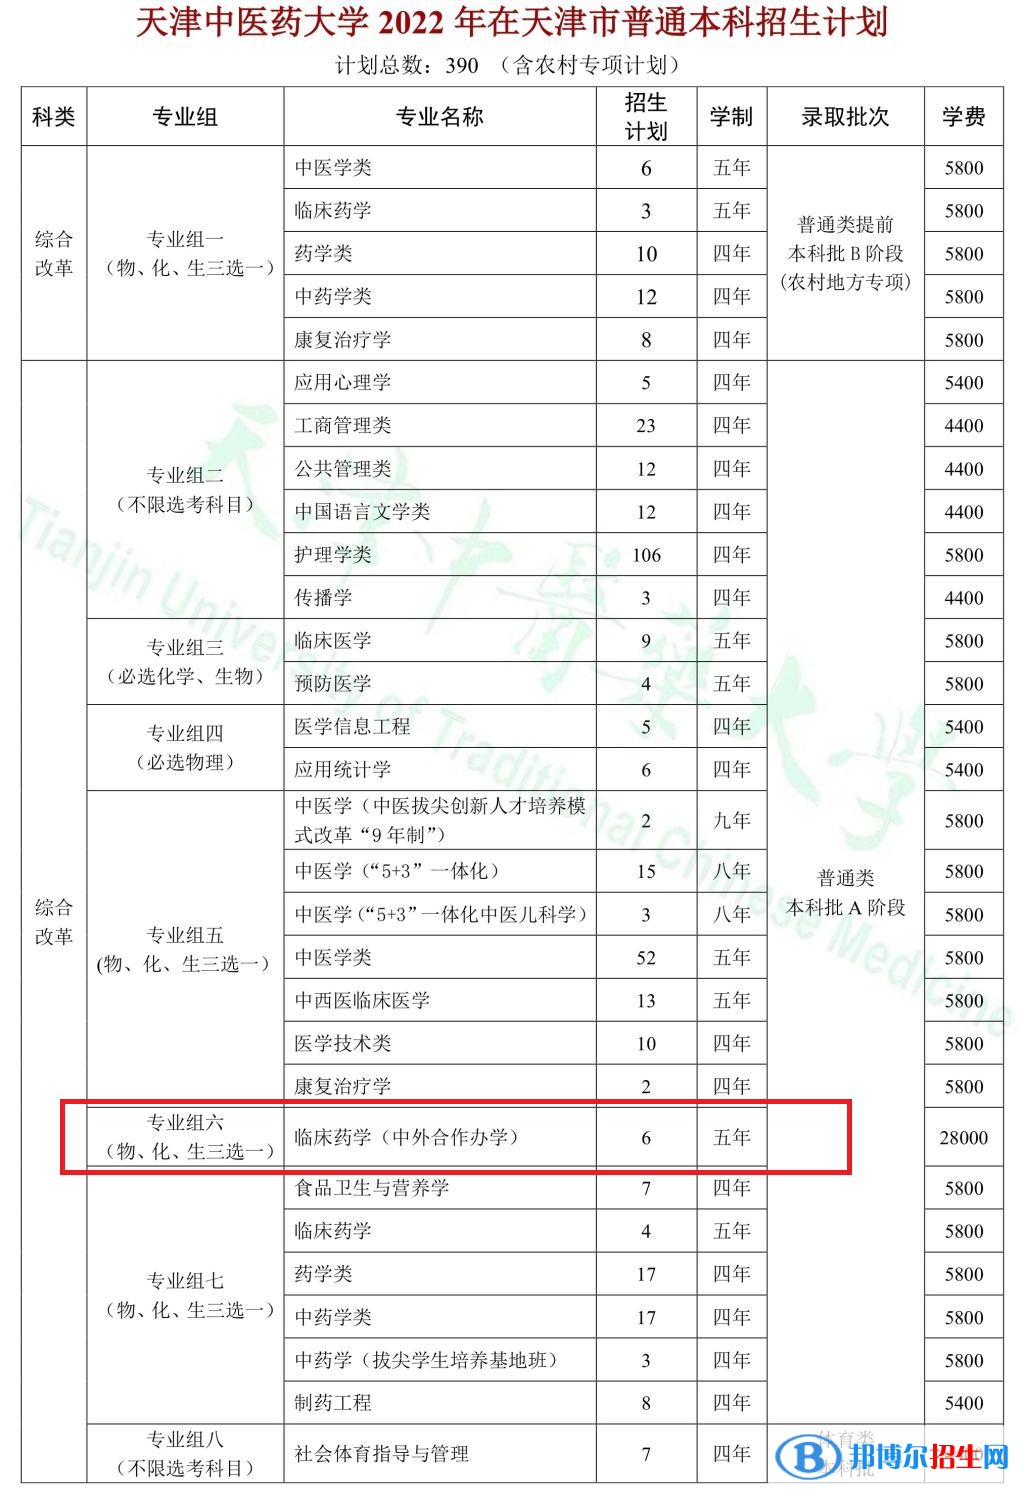 天津中医药大学有哪些中外合作办学专业?(附名单)